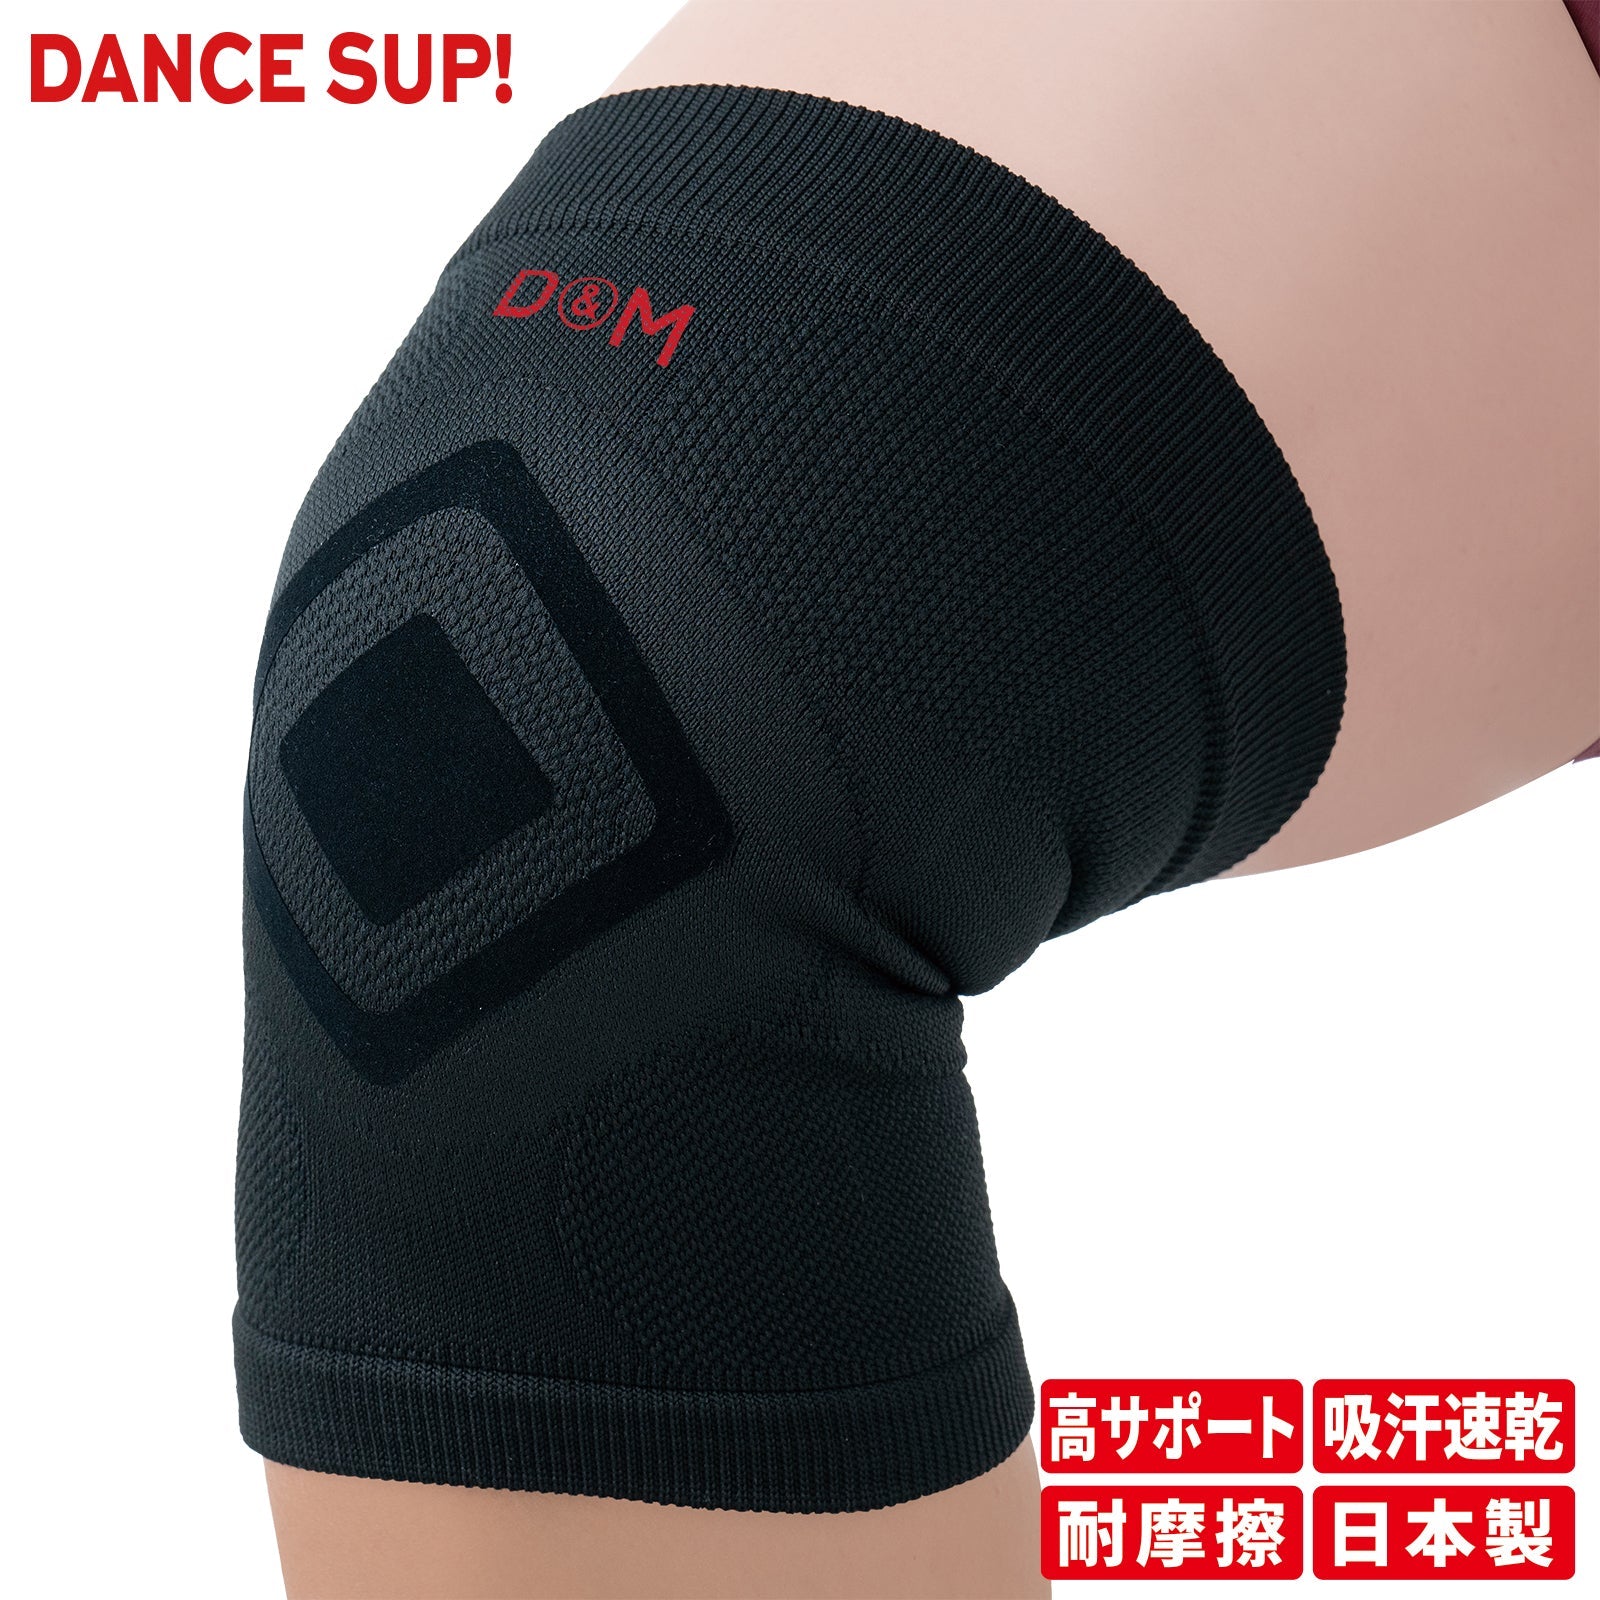 【DANCE SUP!】膝サポーター 膝用 ダンス用 パッドなし ダンスサップ 黒 ブラック 左右兼用 1個入 日本製 #SUP-83D